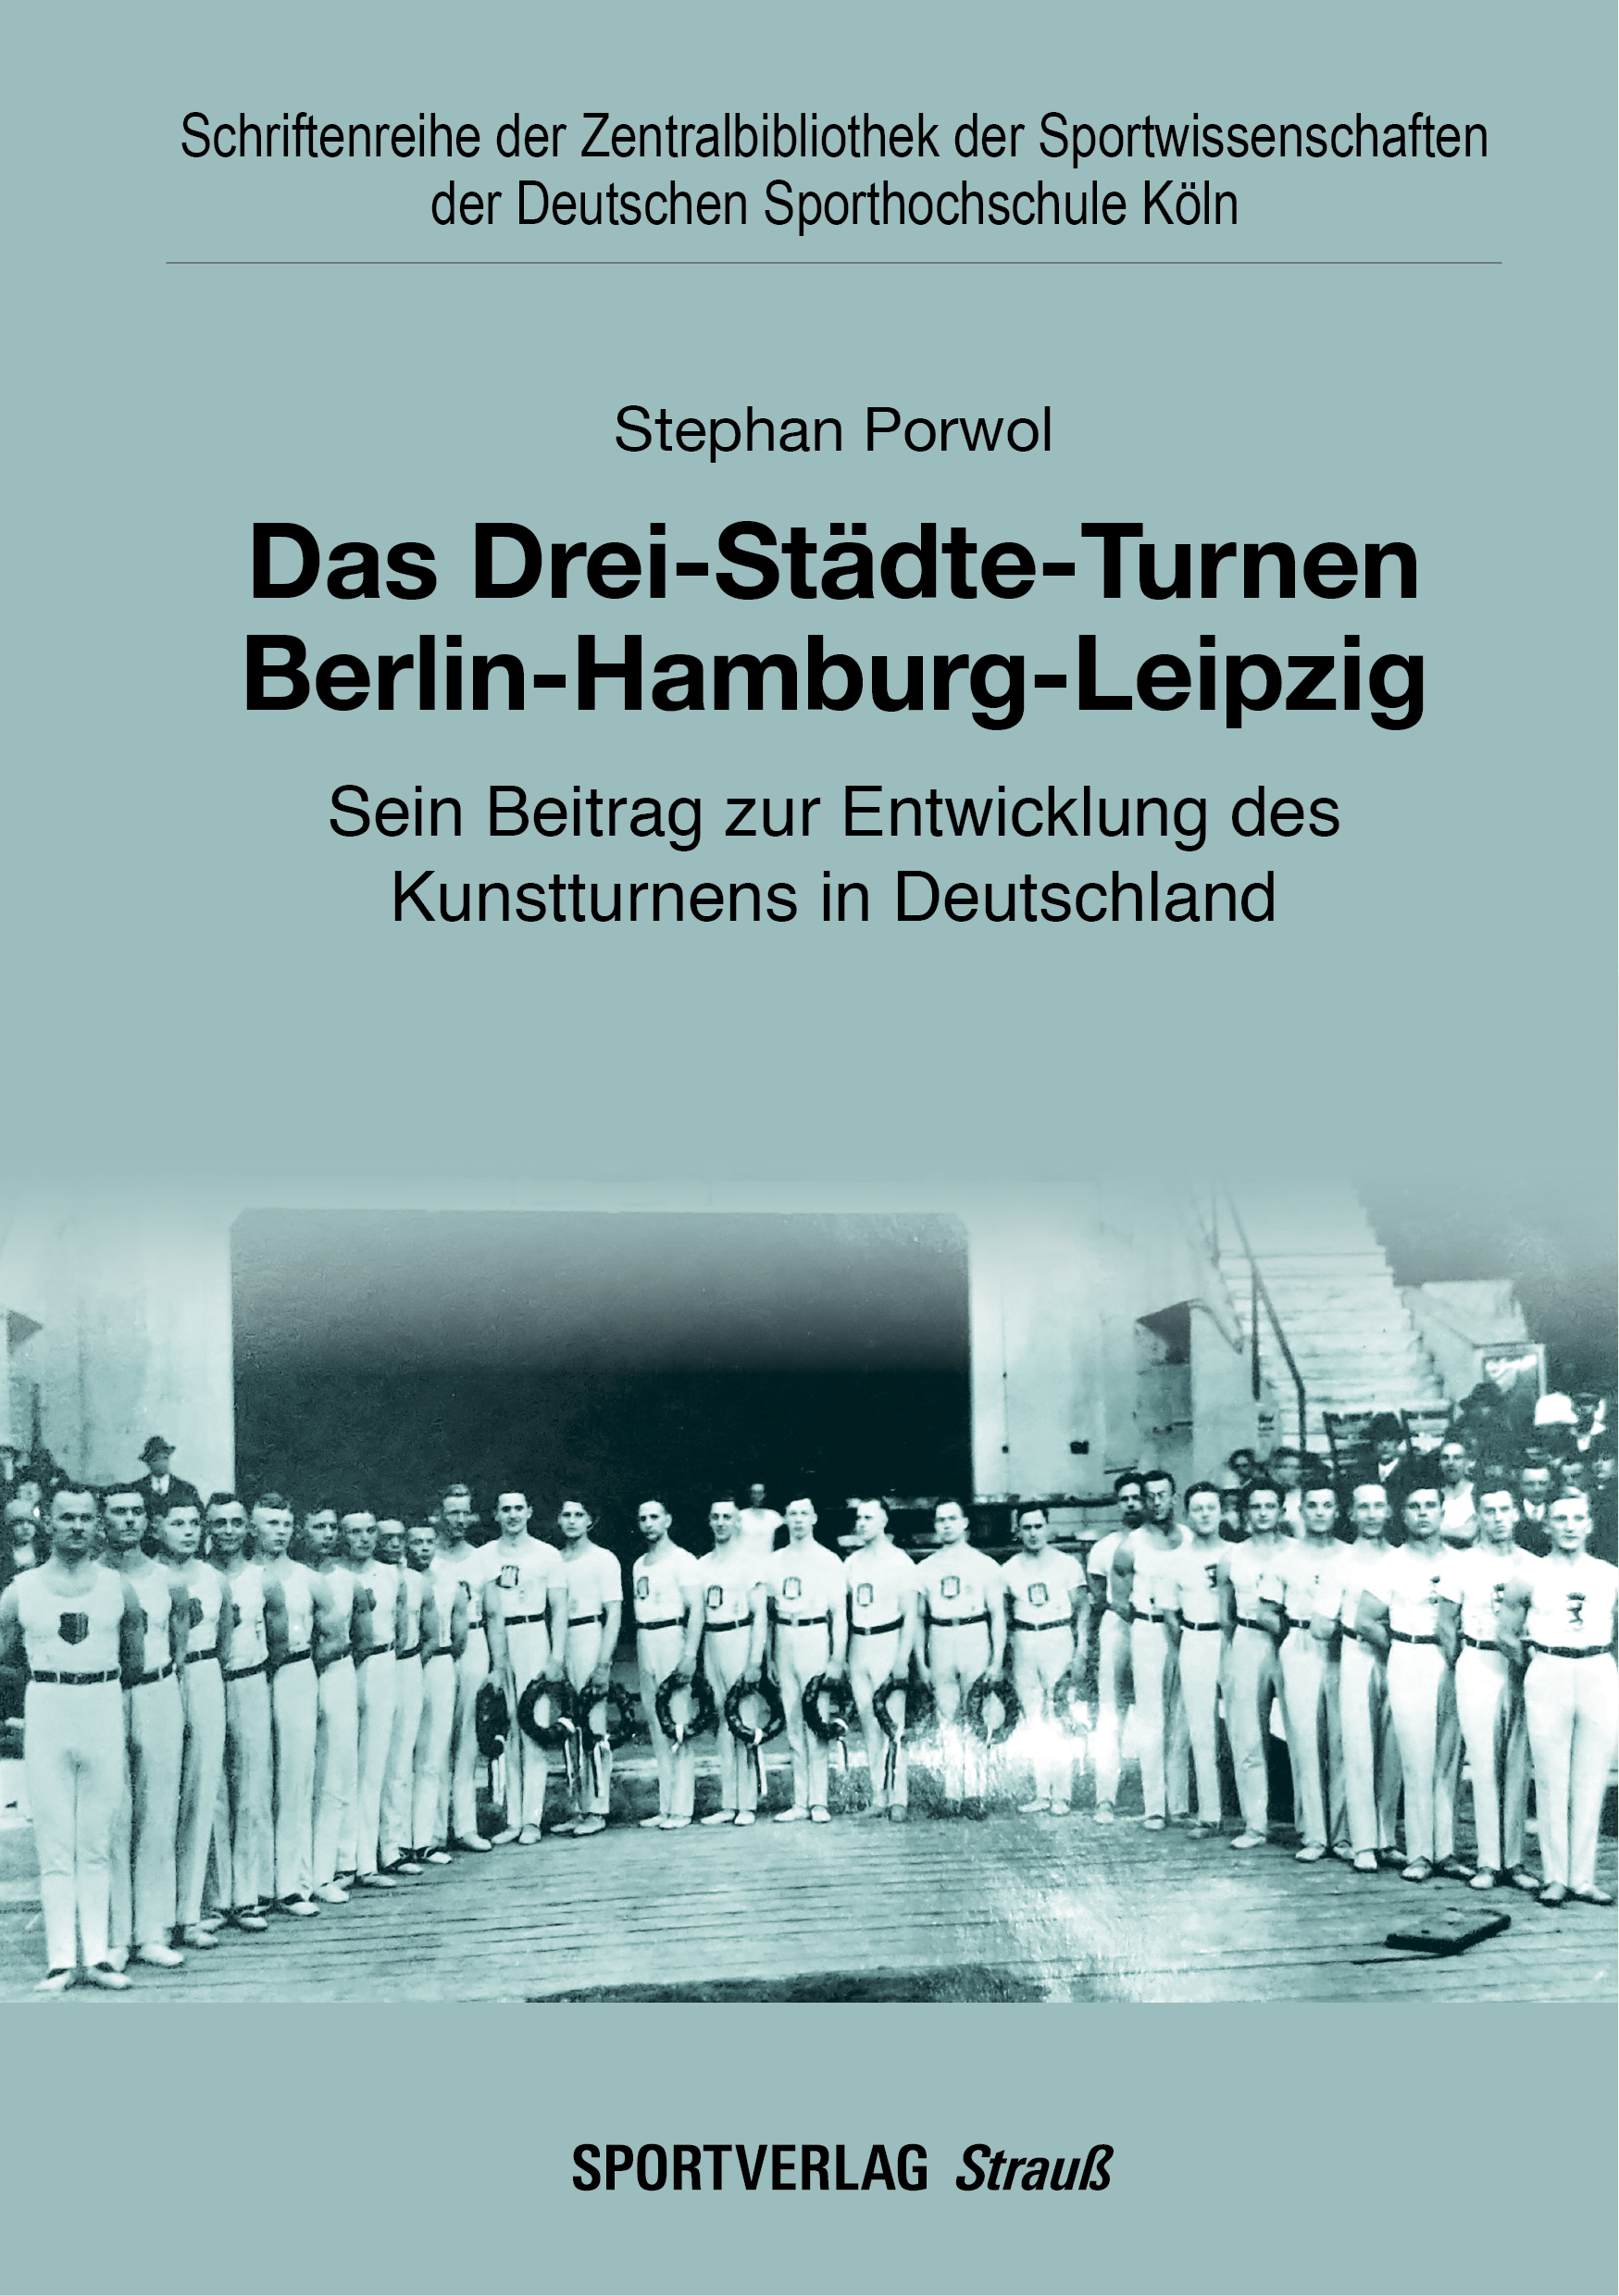 Das Drei-Städte-Turnen Berlin-Hamburg-Leipzig | Bildquelle: Sportverlag Strauß